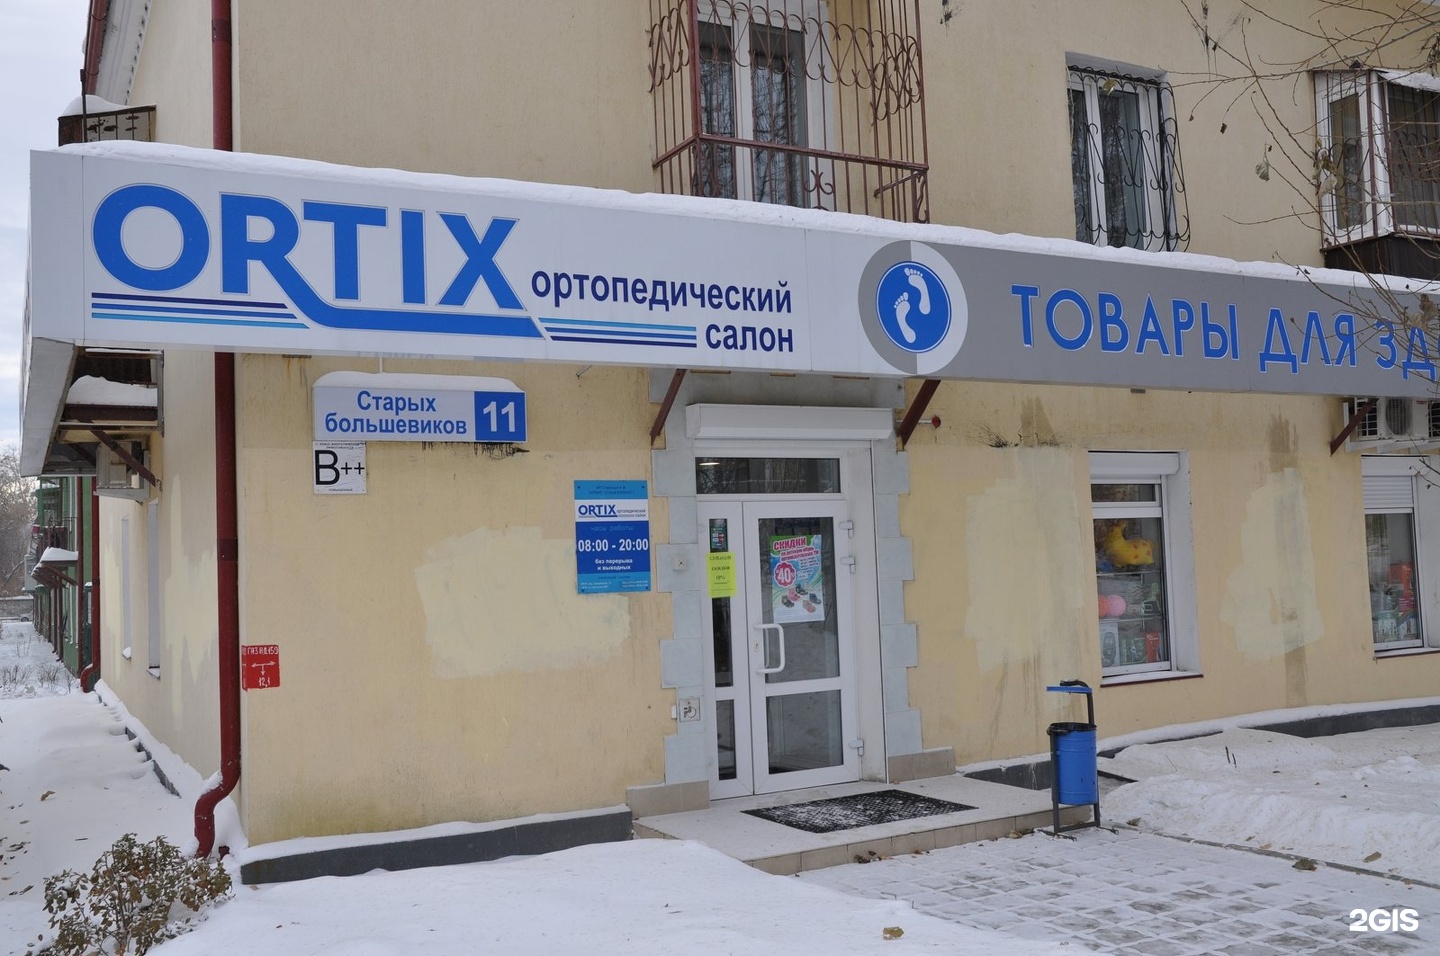 Магазин Ортикс в Екатеринбурге